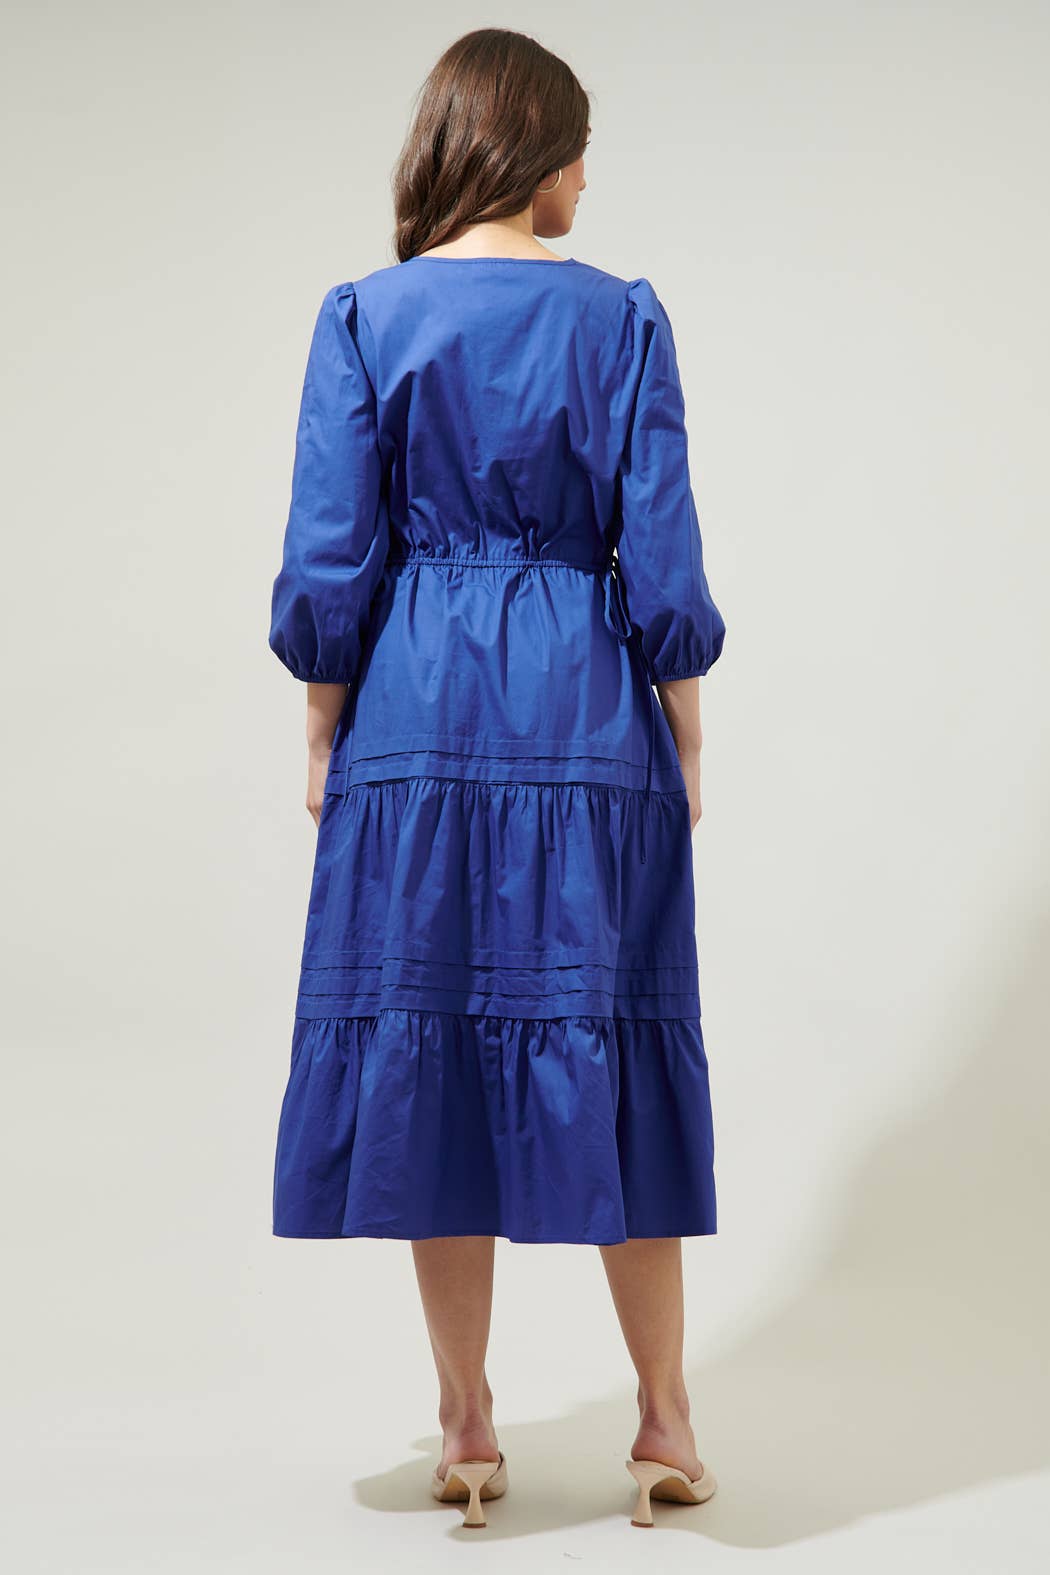 Atelier Poplin Tiered Midi Dress: Navy / S